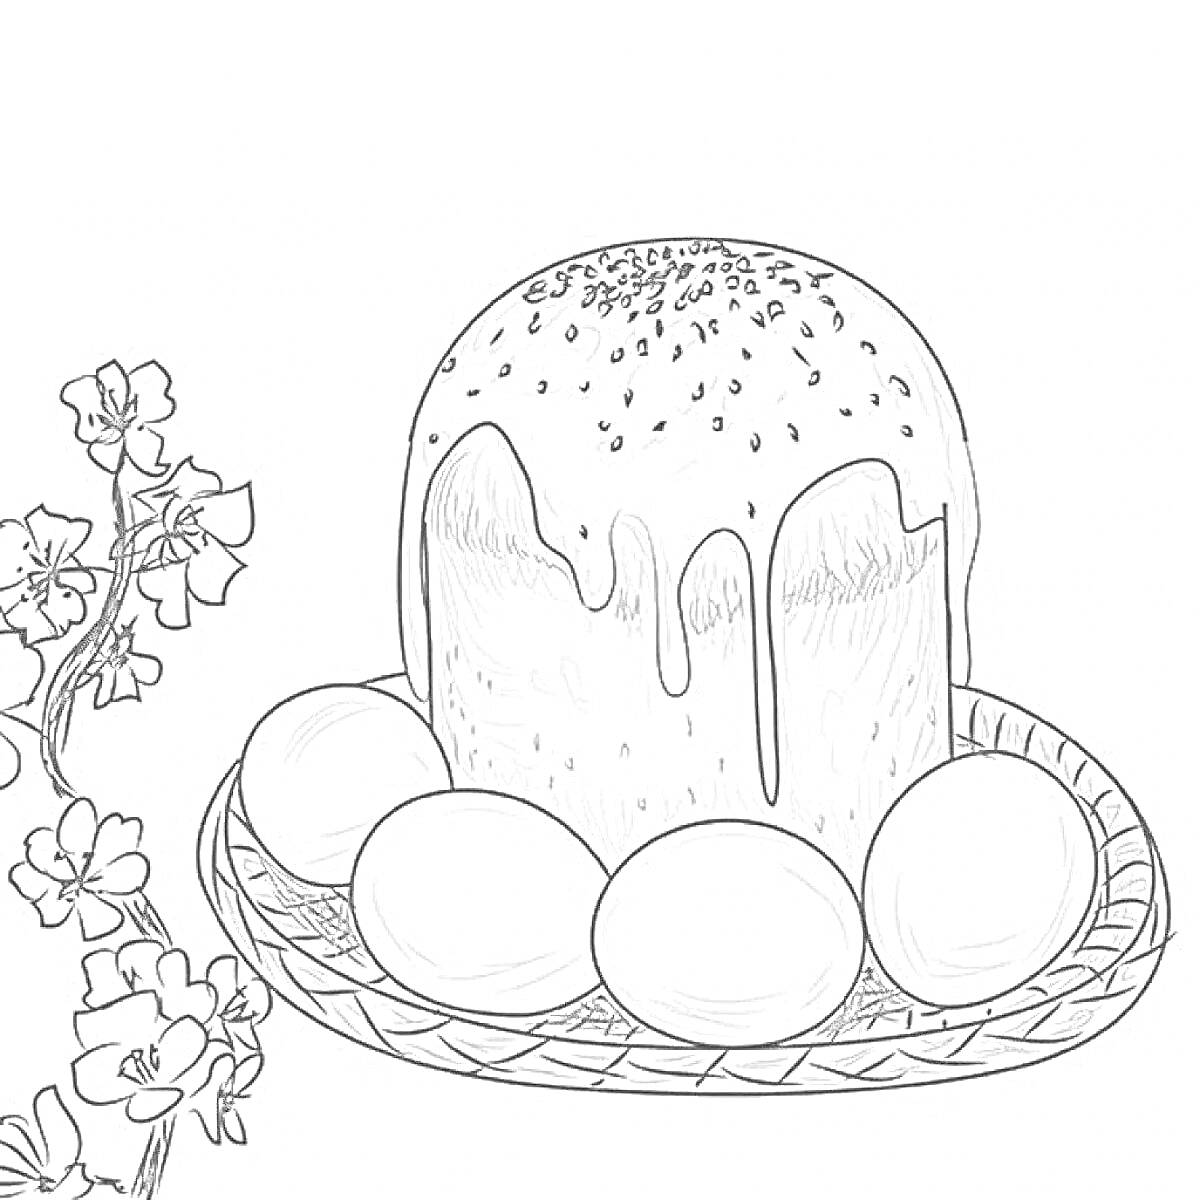 Пасхальный кулич с глазурью и посыпкой, на подносе с яйцами, рядом цветы